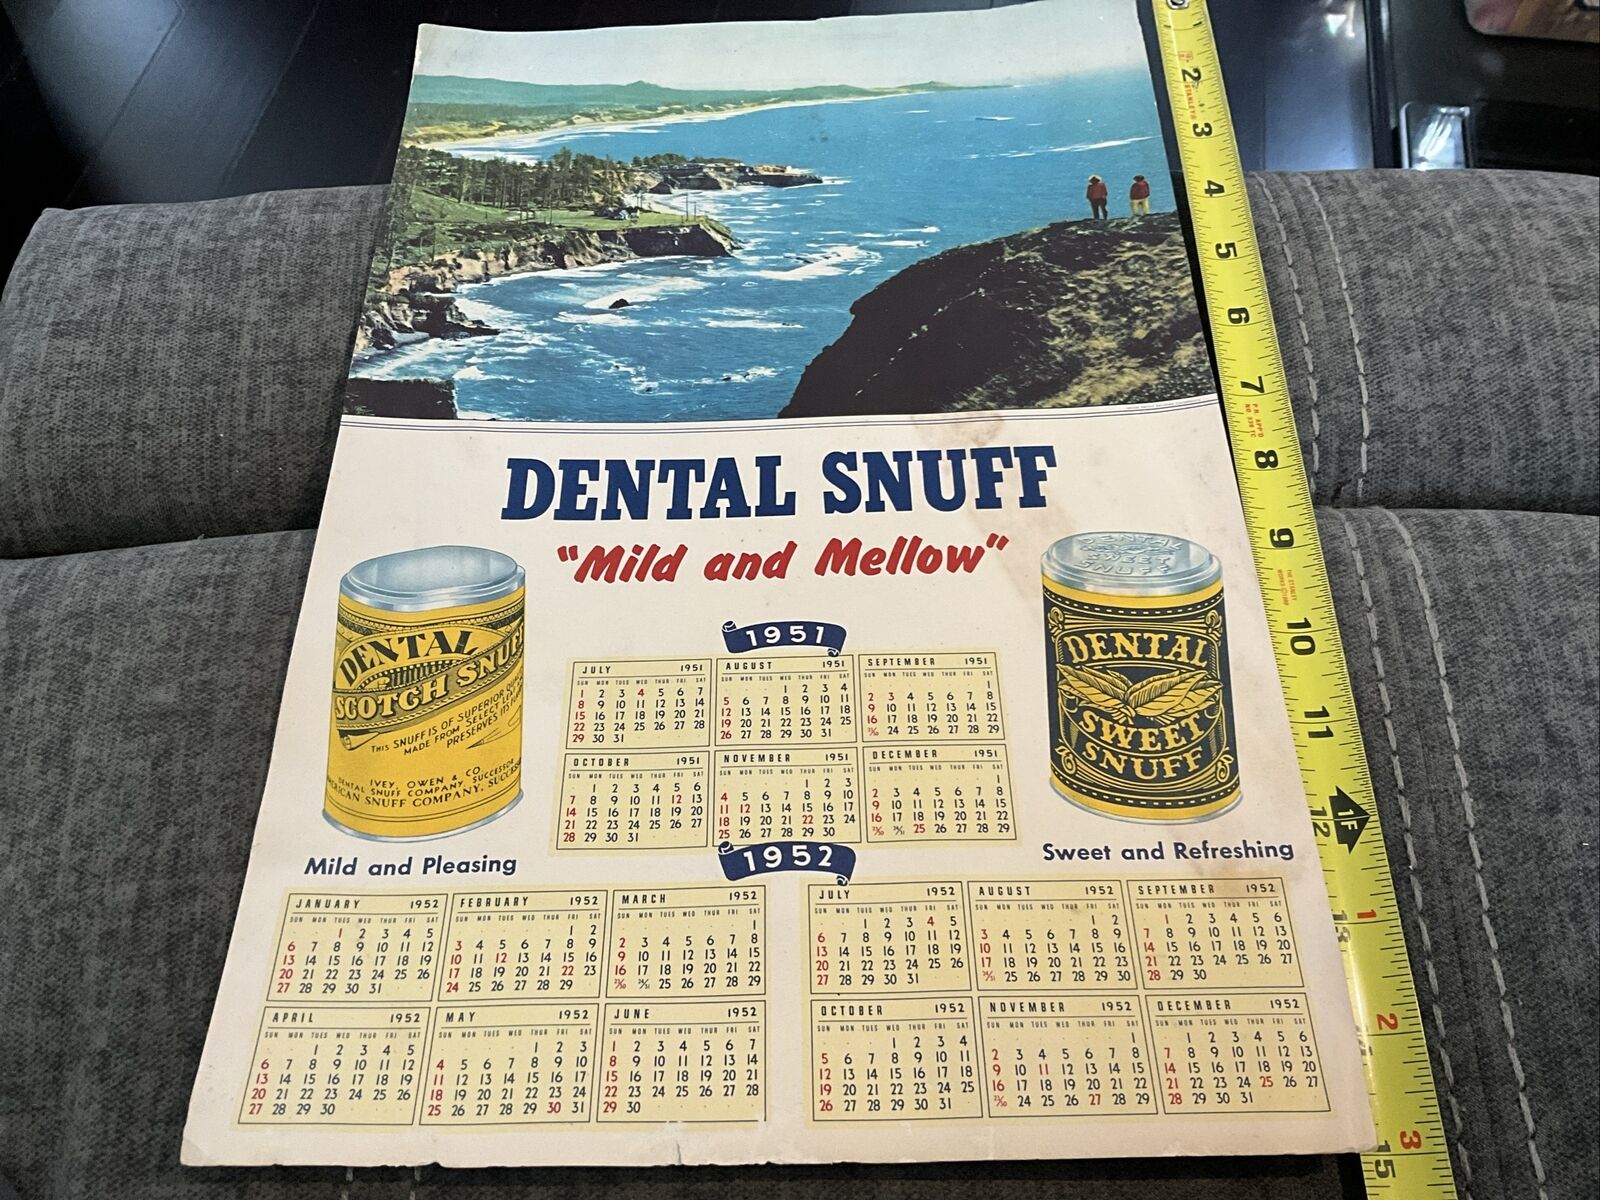 1951-1952 Dental Snuff Calendar 15”x10”